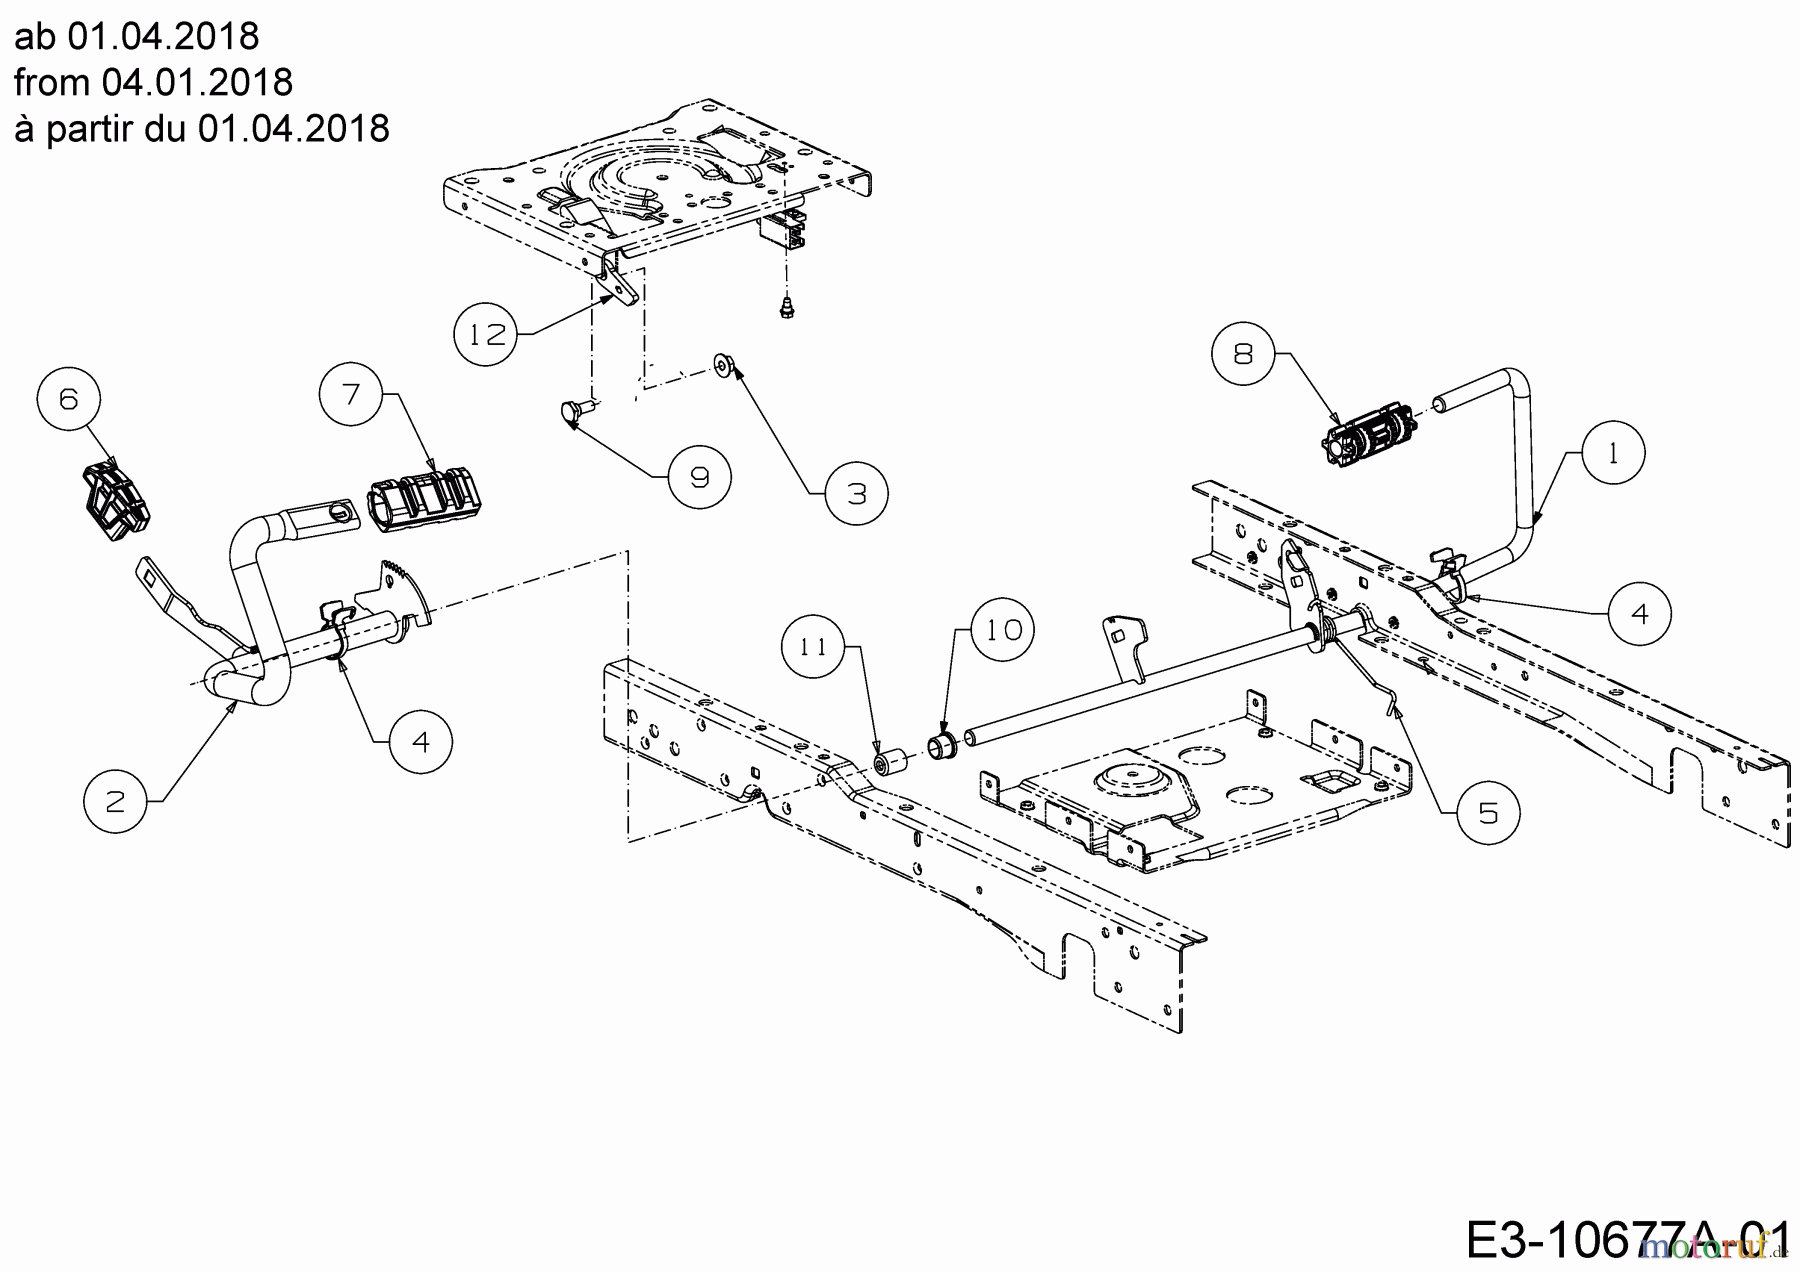  Cub Cadet Lawn tractors XT2 PS117 13CGA1CT603 (2021) Pedals from 04.01.2018